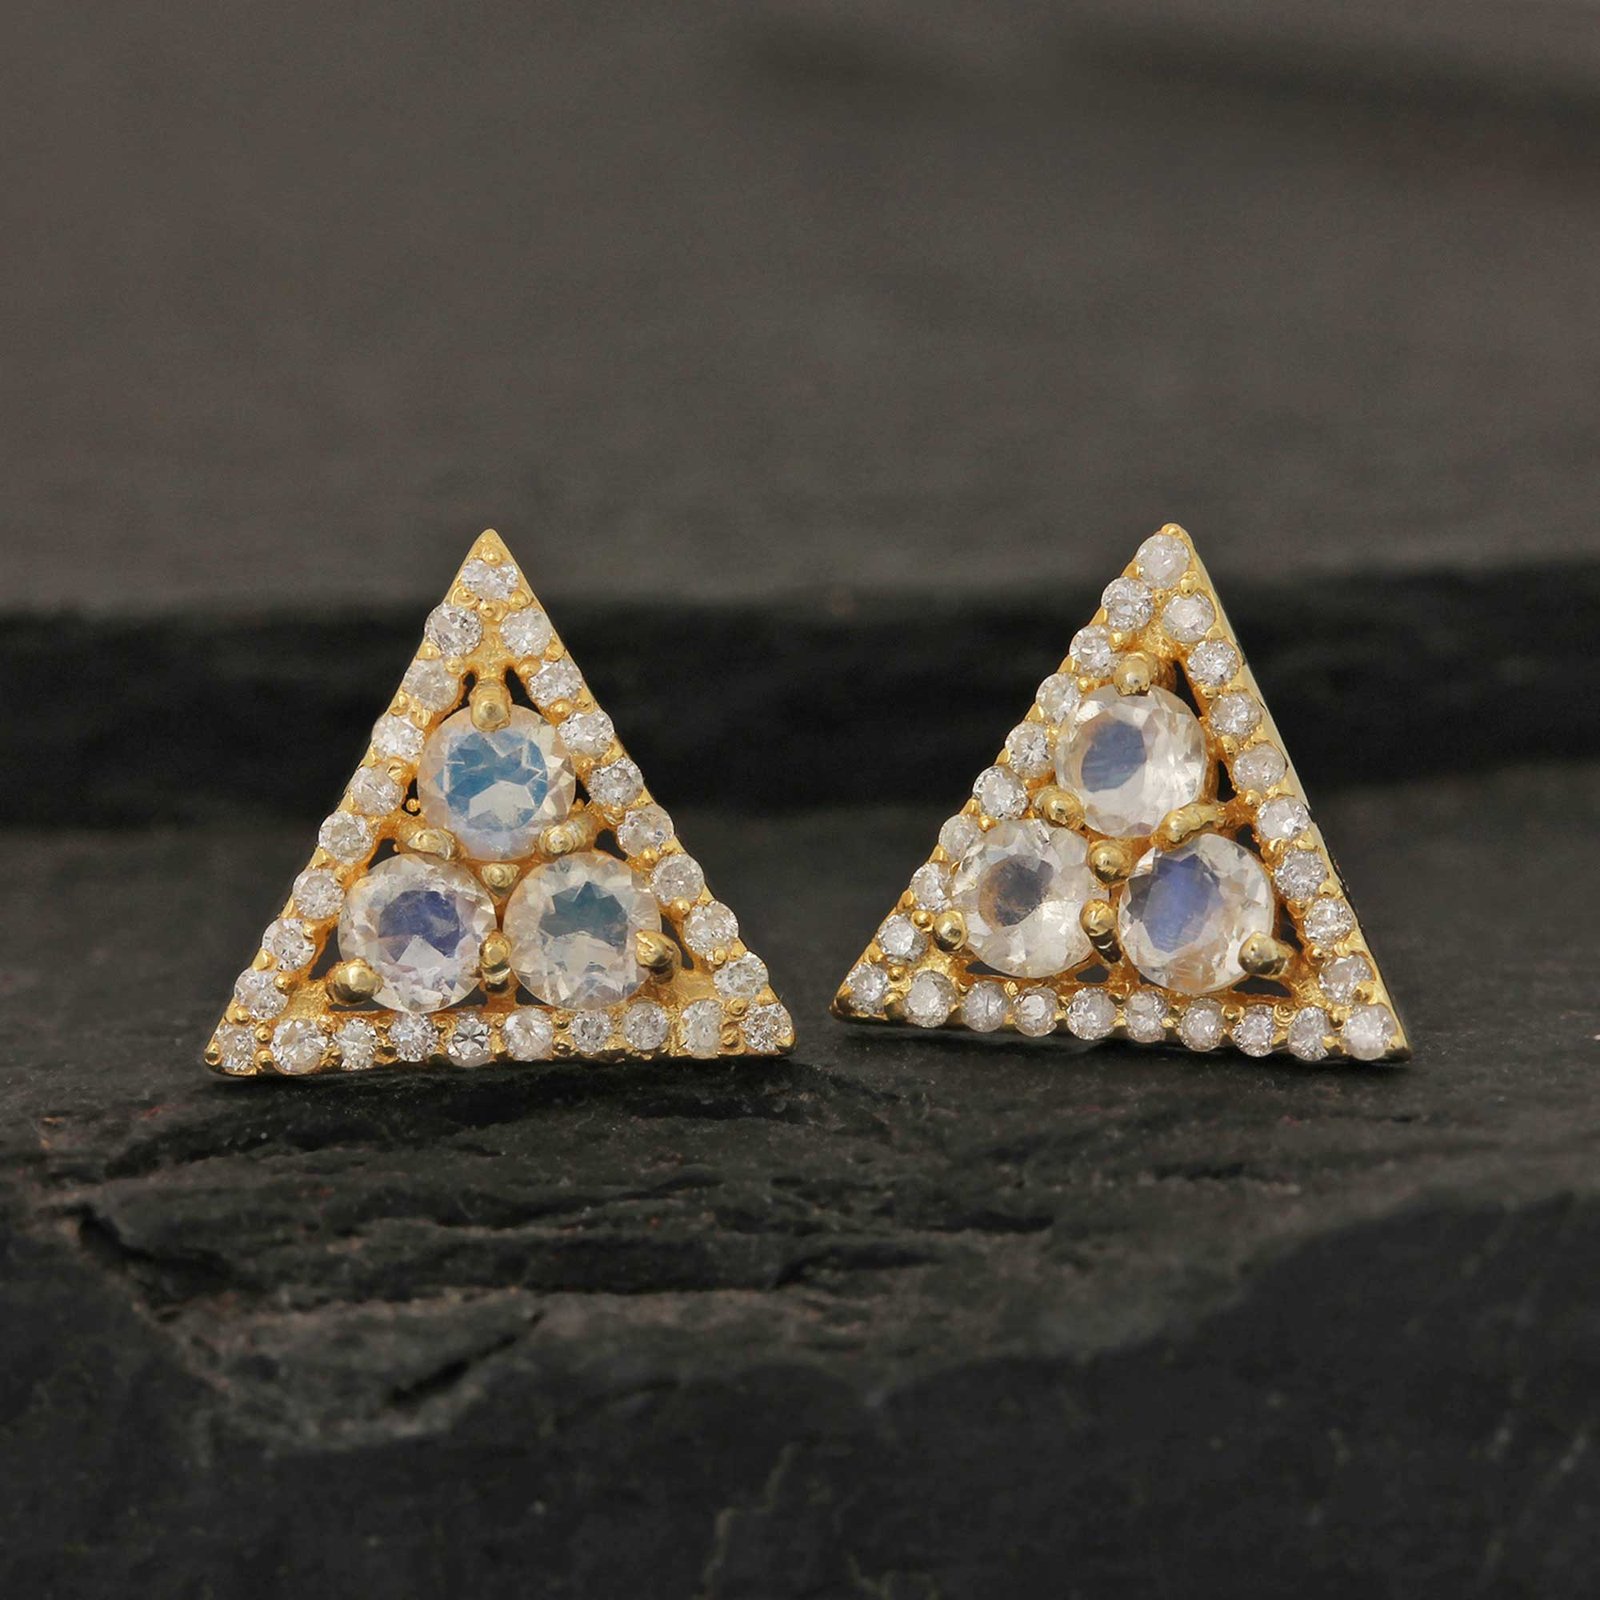 14k Solid Gold Minimalist Stud Earrings Adorned With Diamond & Moonstone